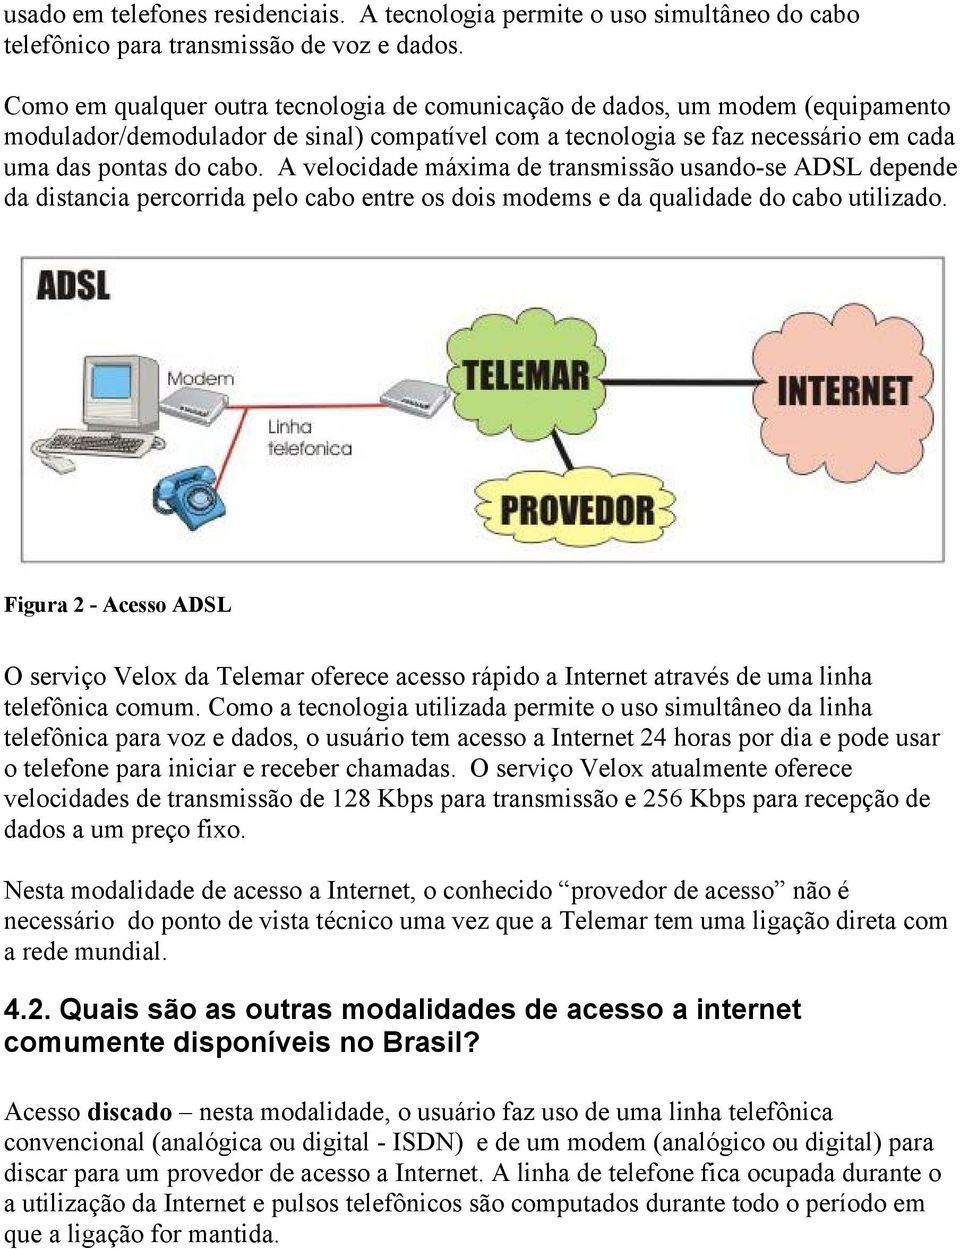 A velocidade máxima de transmissão usando-se ADSL depende da distancia percorrida pelo cabo entre os dois modems e da qualidade do cabo utilizado.